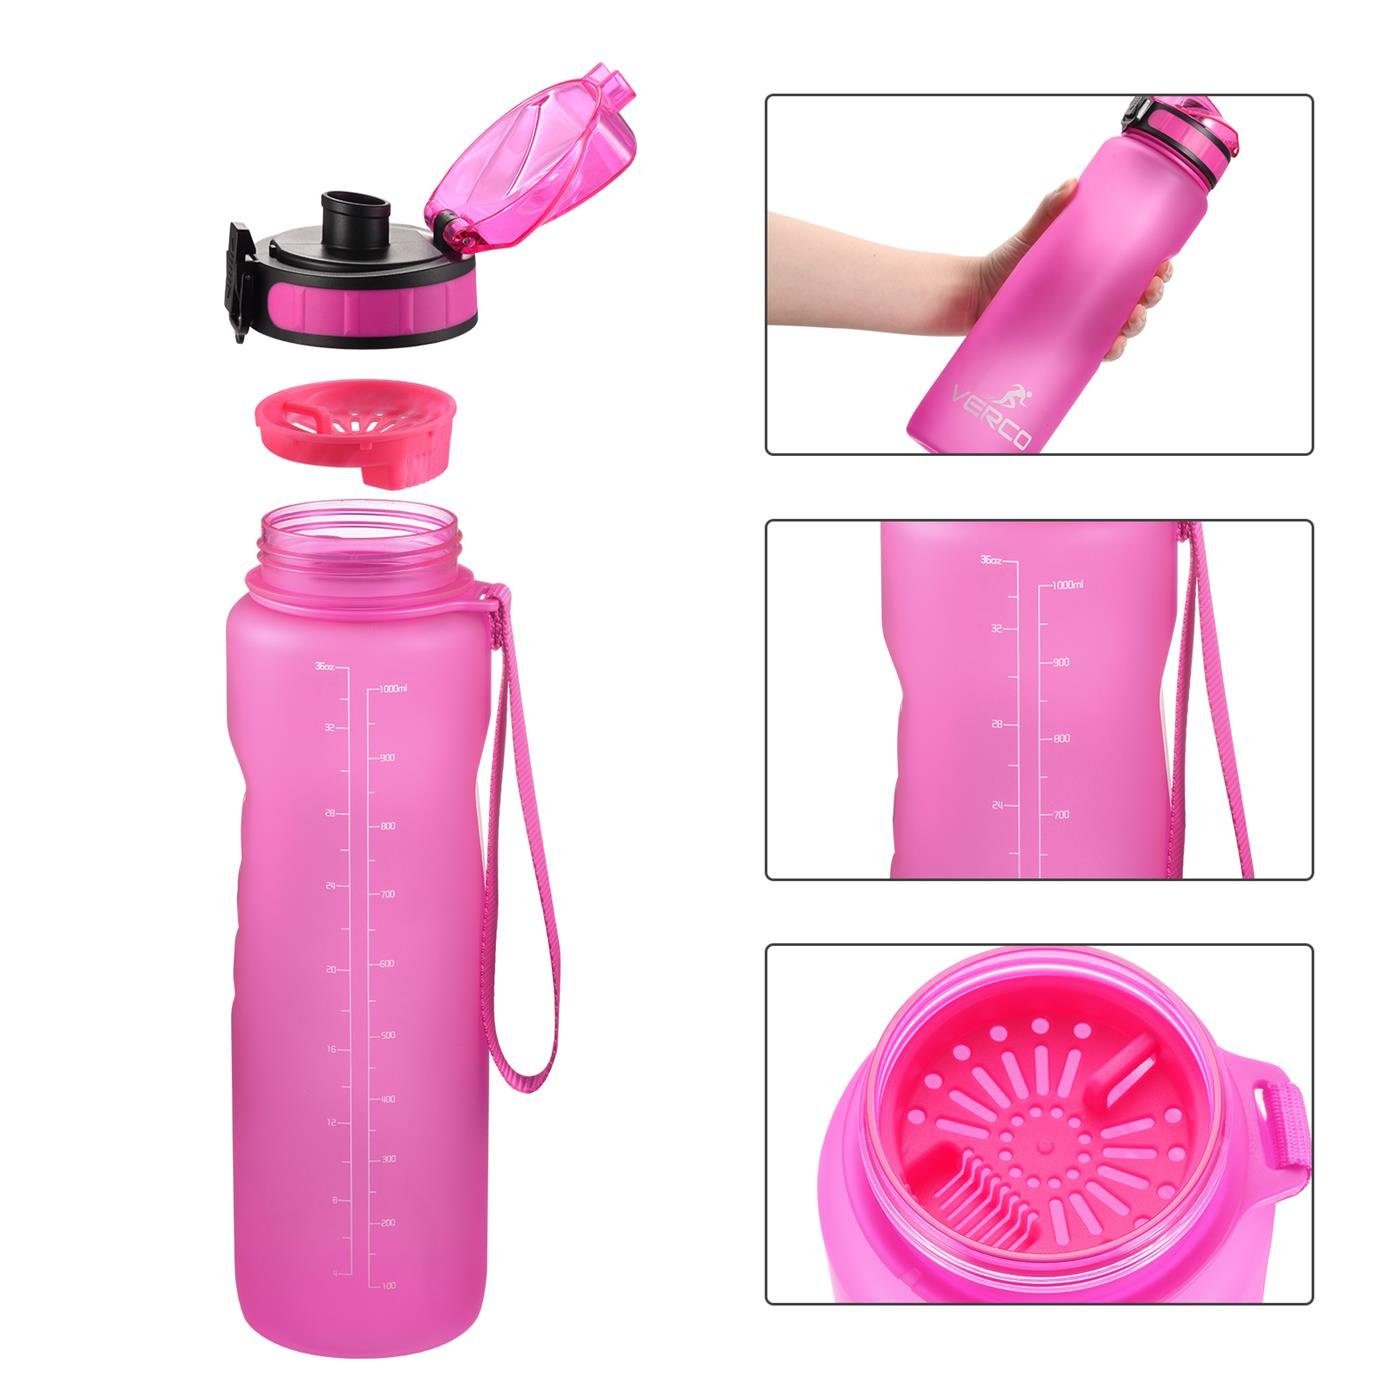 650 0,65 mit BPA Sport ml Flasche, Frei VERCO wiederverwendbar nachhaltig Wasserflasche Pink Liter Tritan Fruchtsieb Trinkflasche